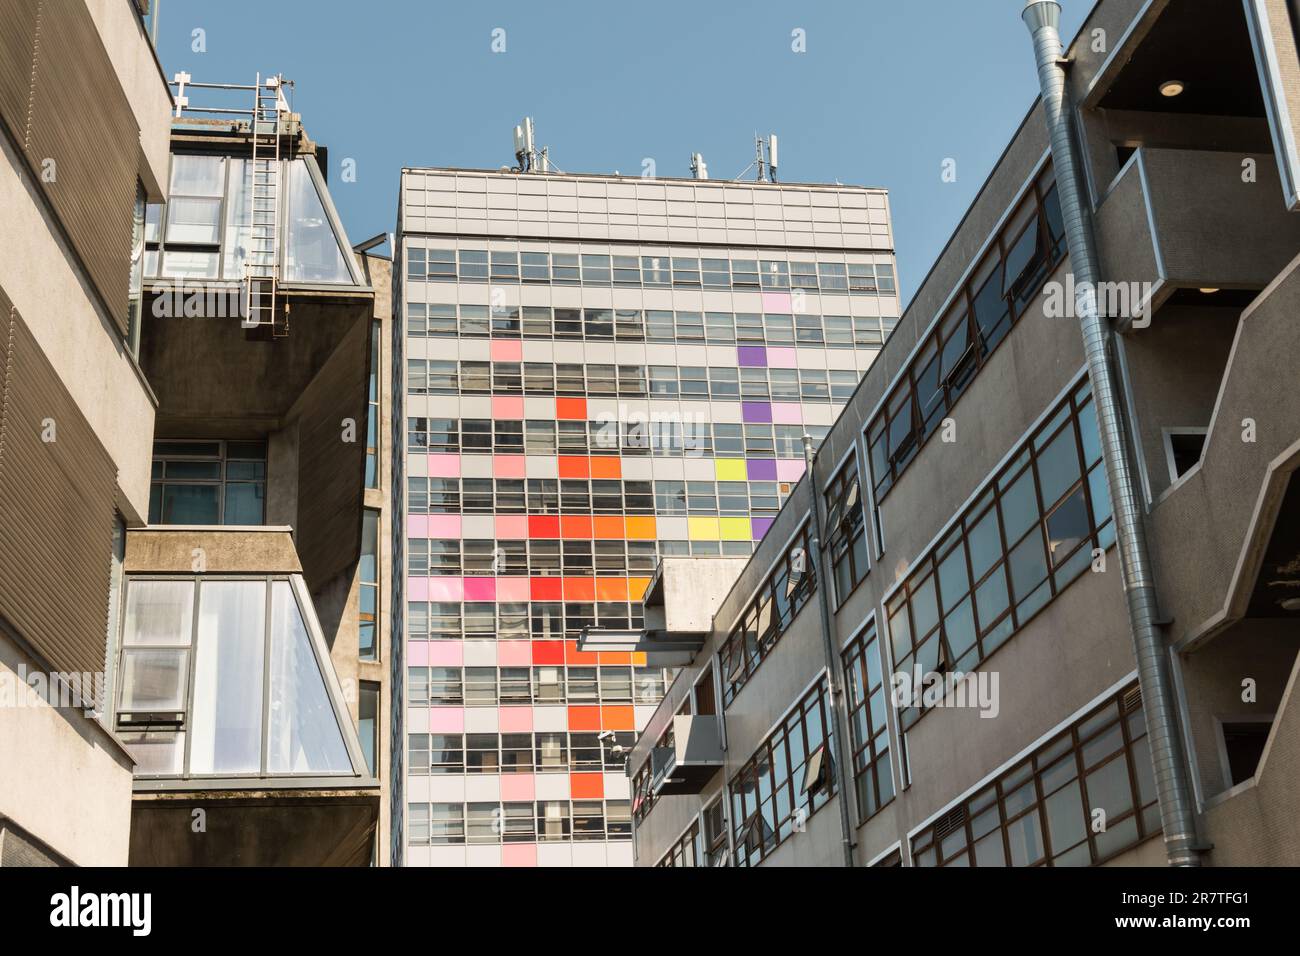 Le bâtiment coloré de la tour LCC, London College of communication, UAL, Elephant & Castle, Southwark, Londres, Angleterre, Royaume-Uni Banque D'Images